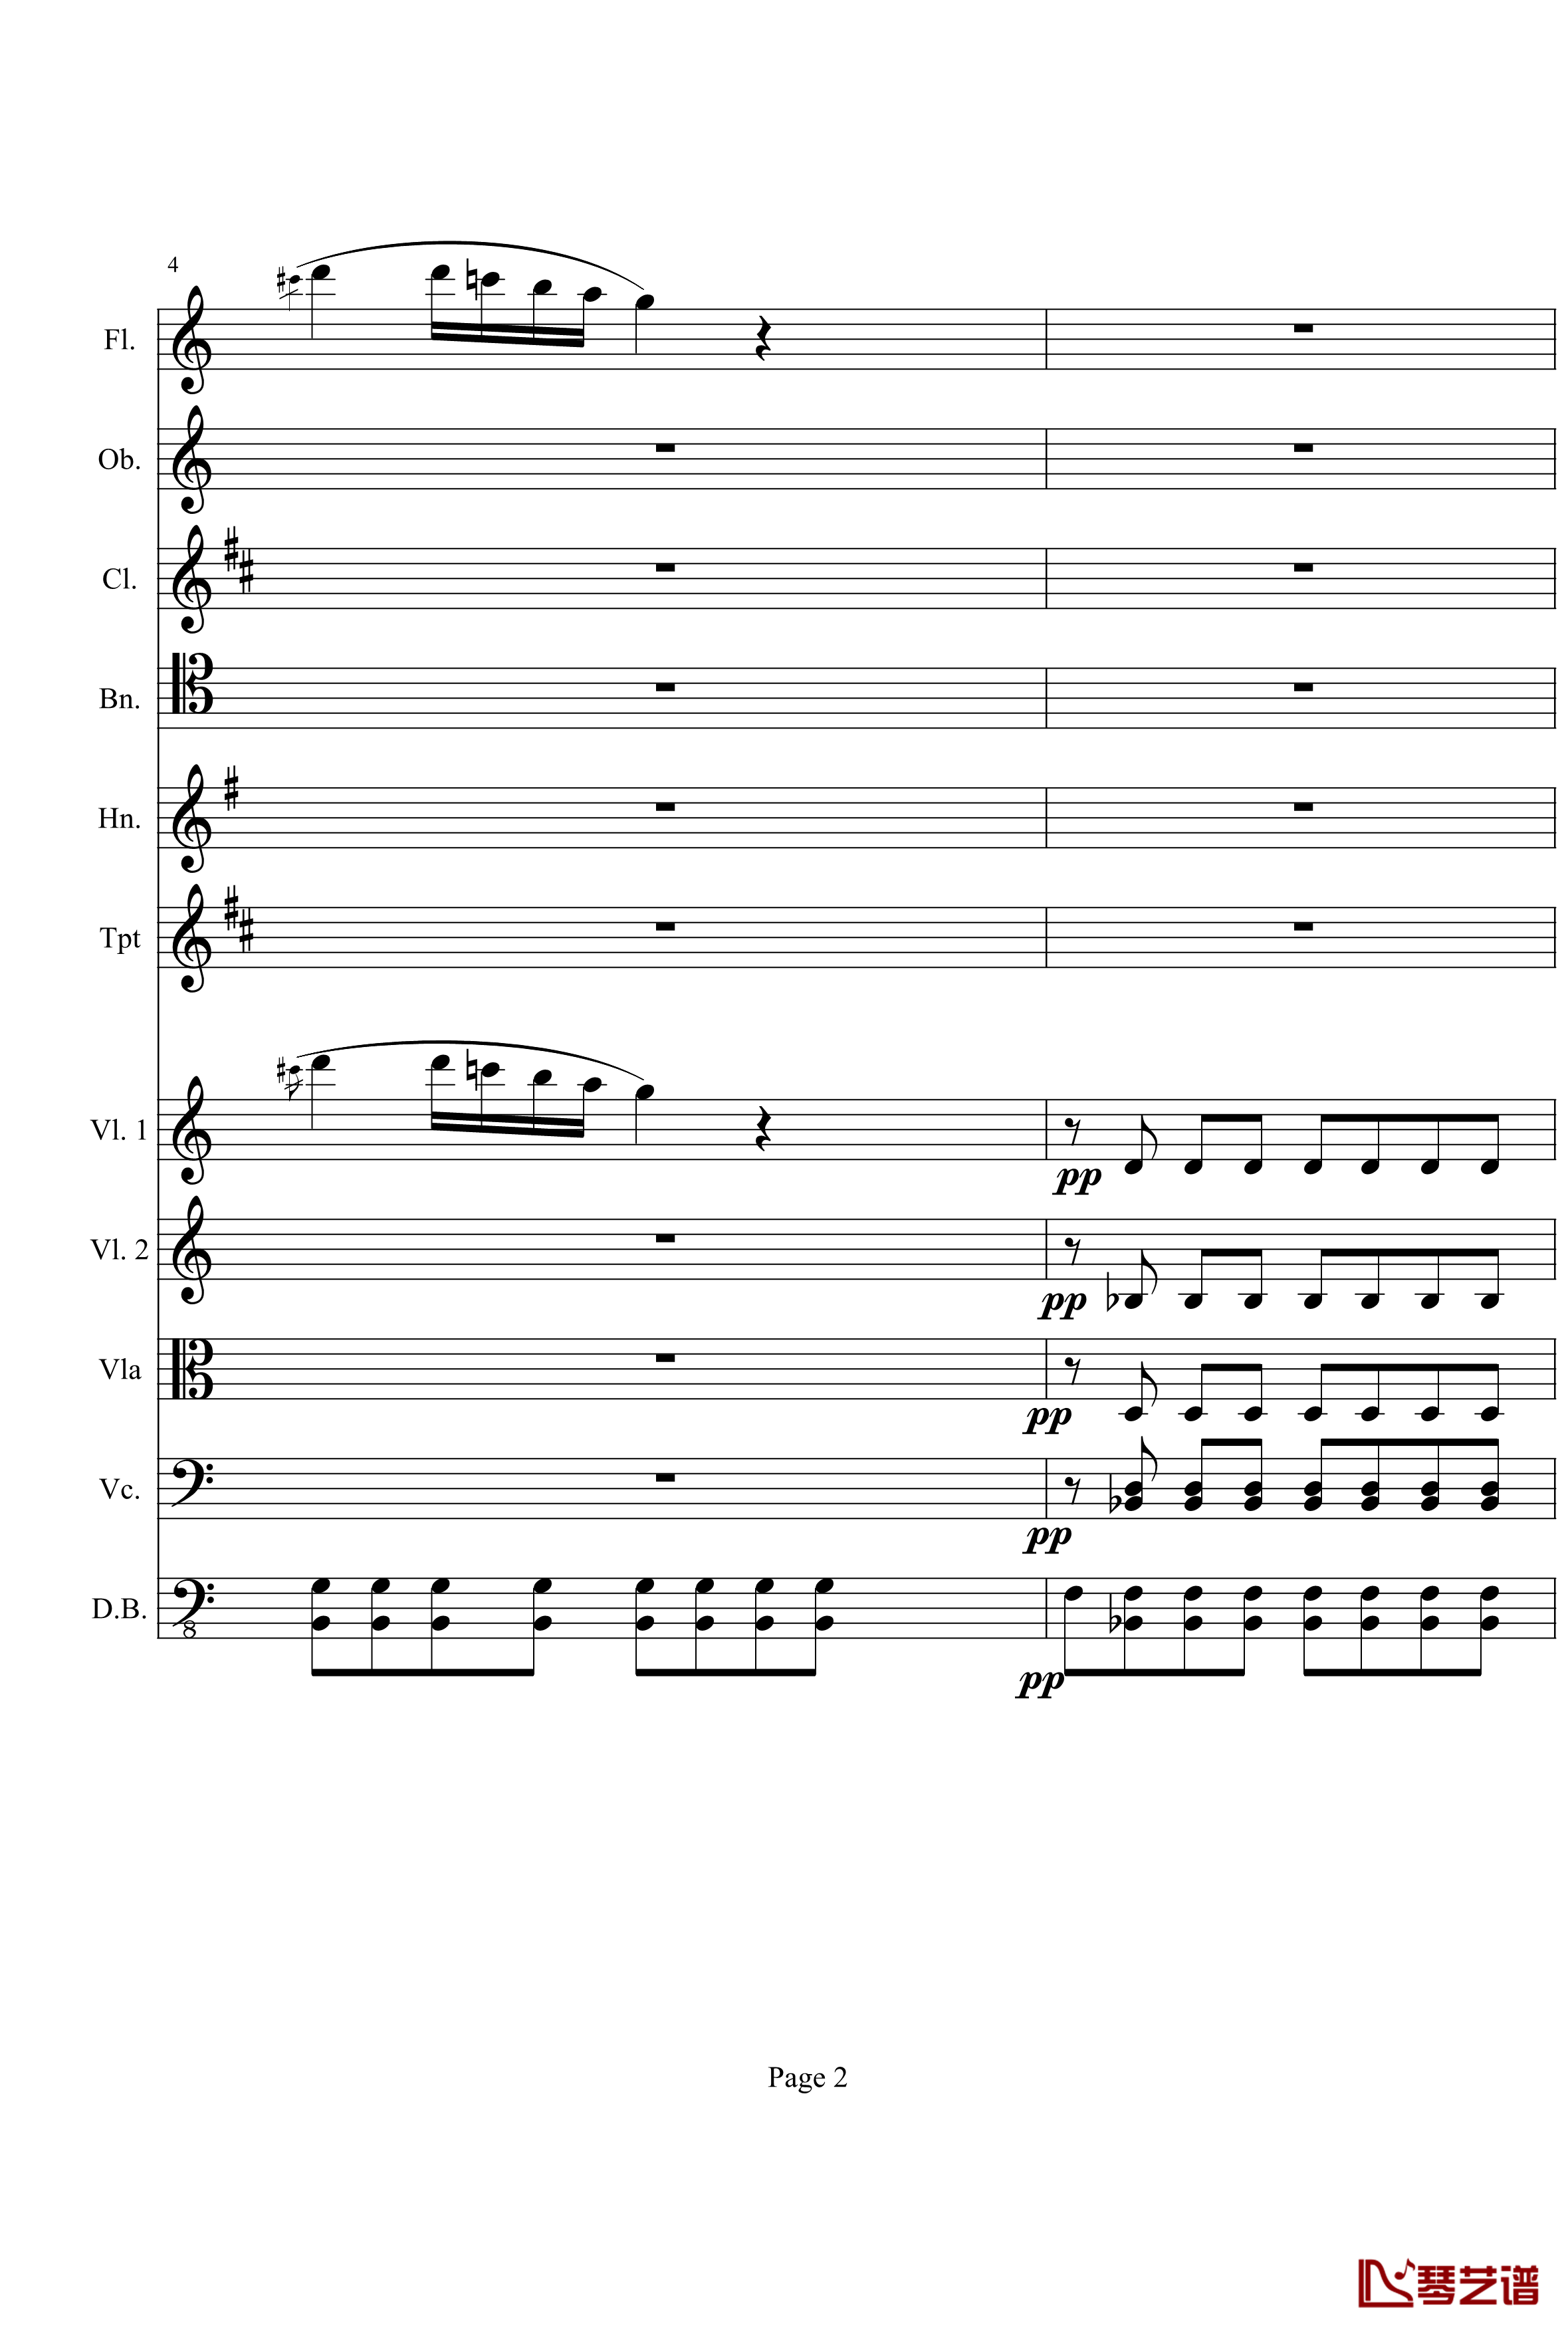 奏鸣曲之交响钢琴谱-第21首-Ⅰ-贝多芬-beethoven2